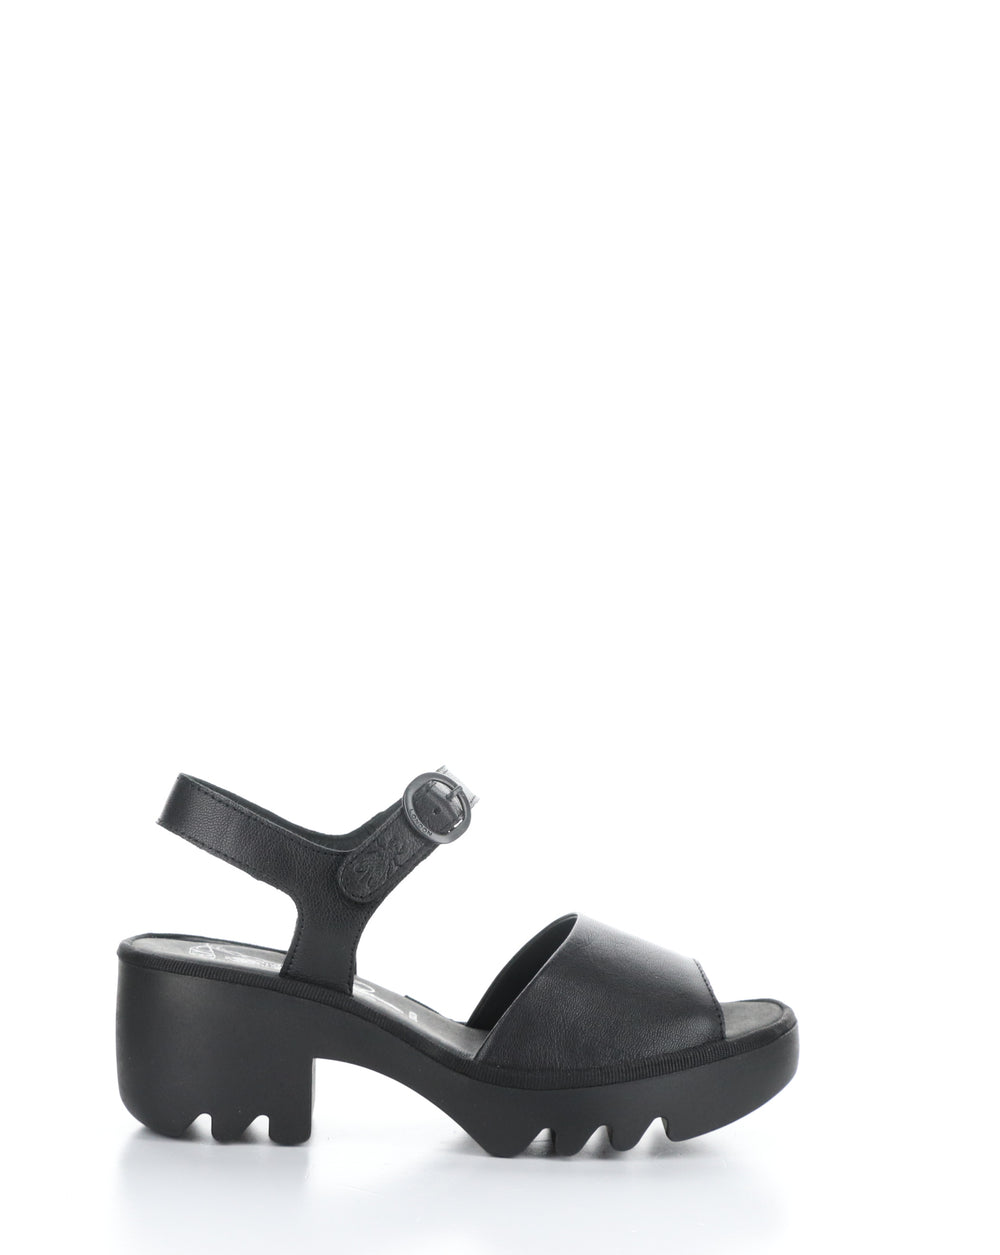 TULL503FLY 000 BLACK Velcro Sandals